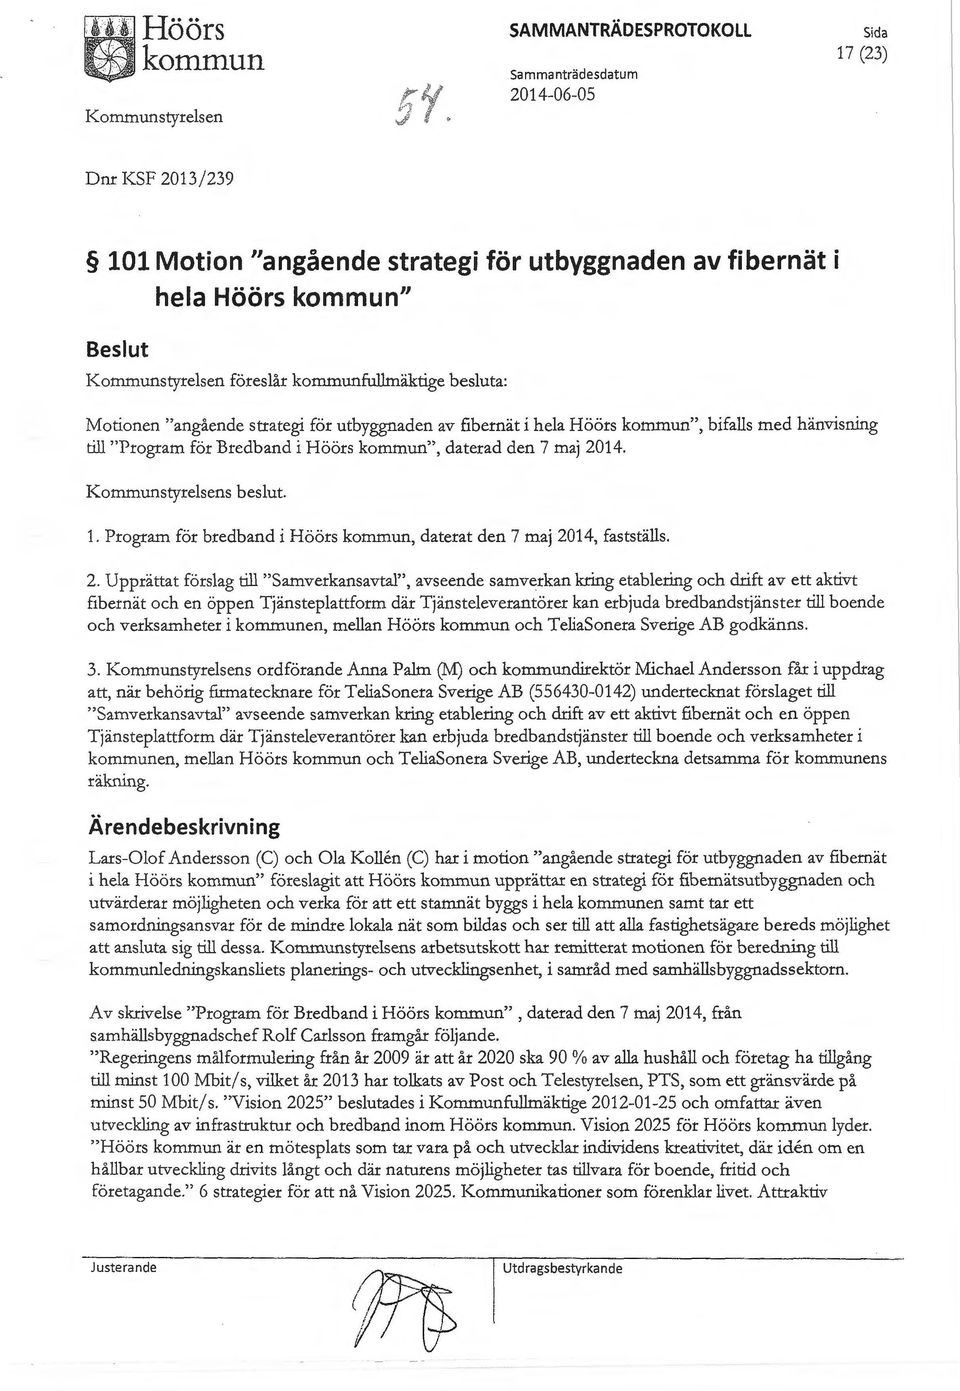 fullmäktige besluta: Motionen "angående strategi för utbyggnaden av fibernät i hela Höörs ", bifalls med hänvisning till "Program för Bredband i Höörs ", daterad den 7 maj 2014.